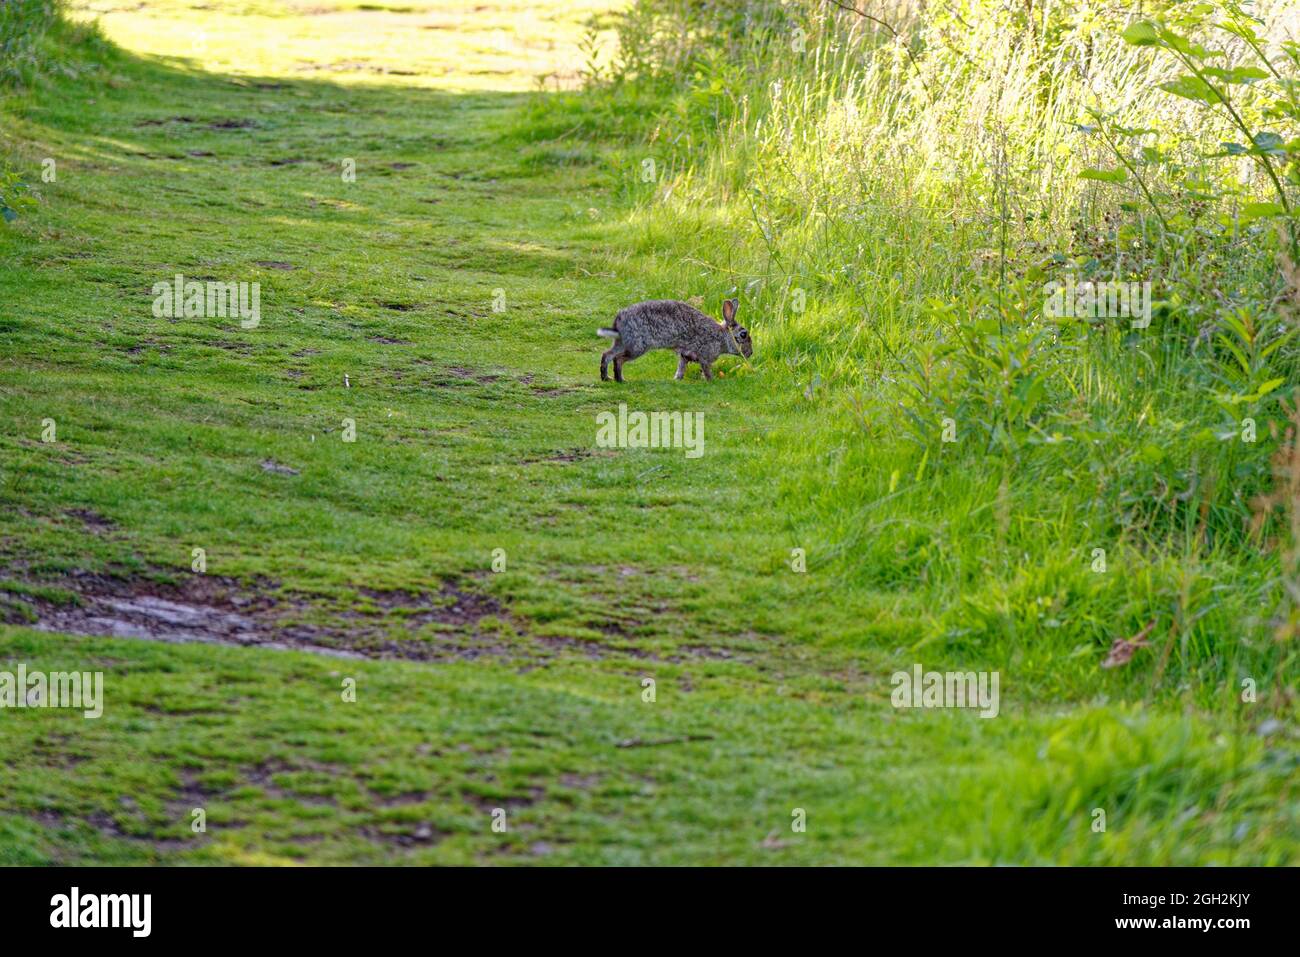 Joli lapin dans les bois - Kinnoull Hill Woodland Park - Perth. Écosse, Royaume-Uni. 17 juillet 2021 Banque D'Images